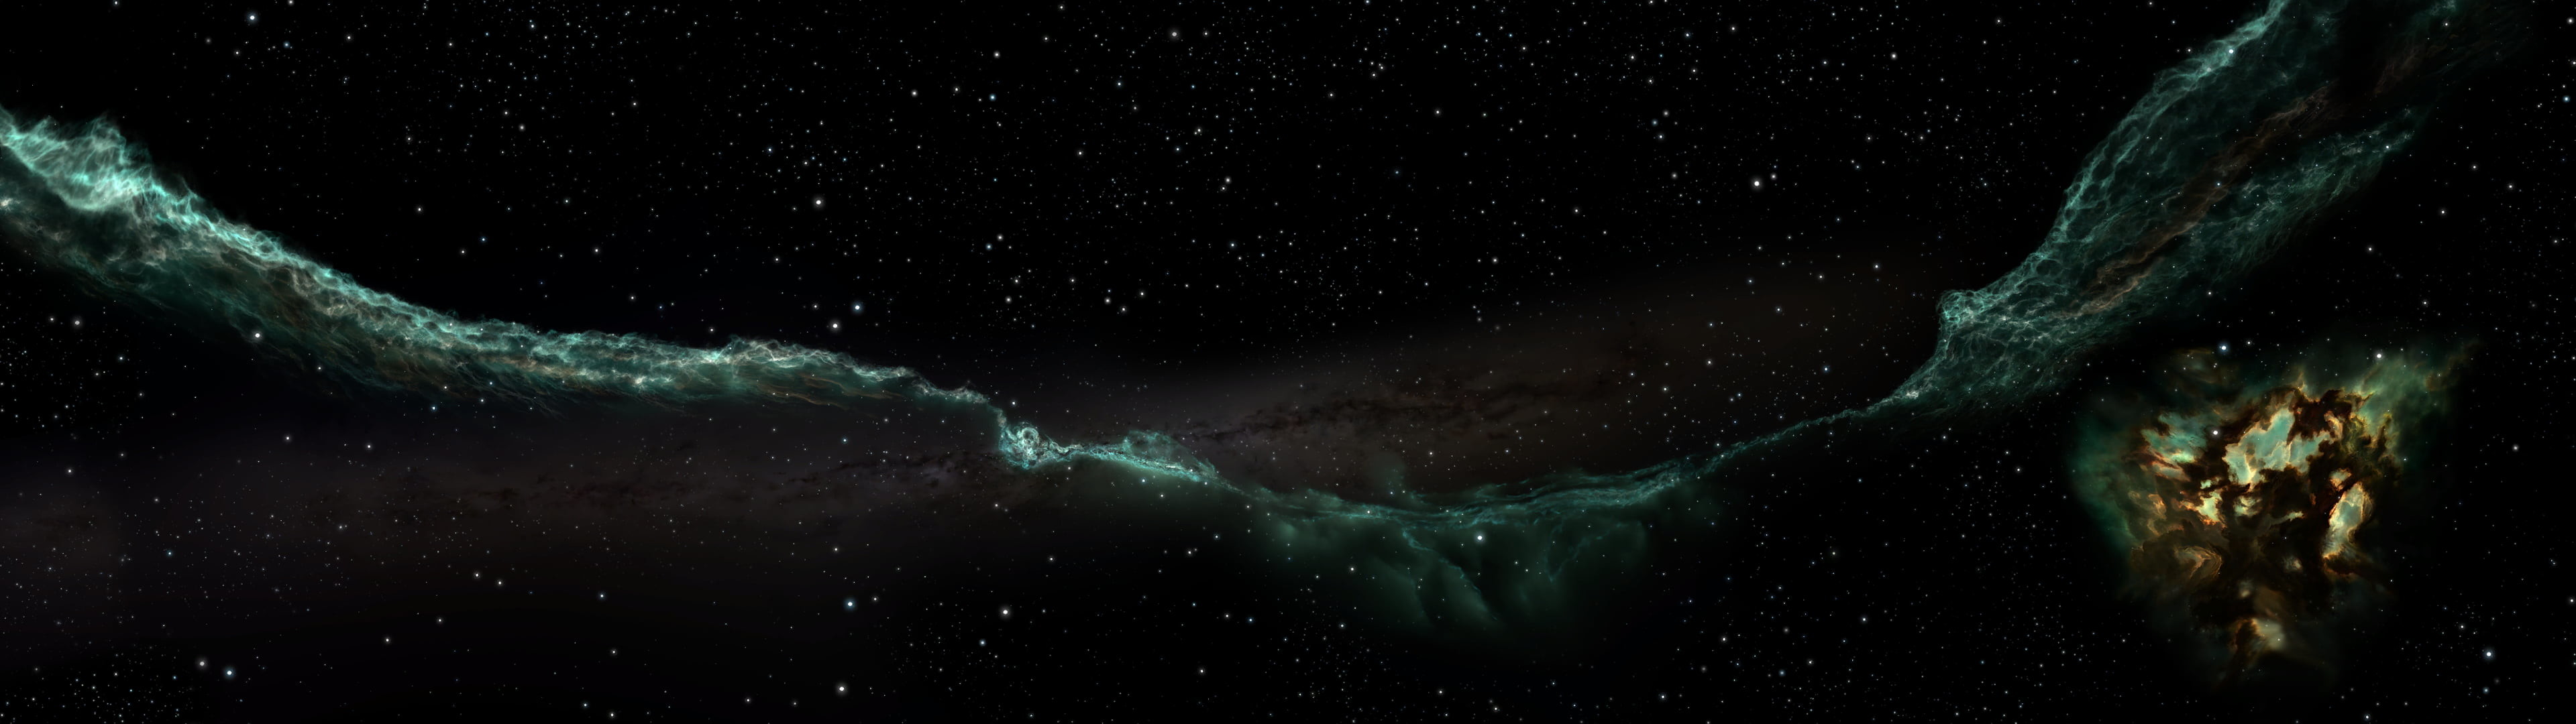 3840x1080, Galaxy, Space, Stars, Eve Online Hd Wallpaper - 3480 X 1080 Wallpaper Space - HD Wallpaper 